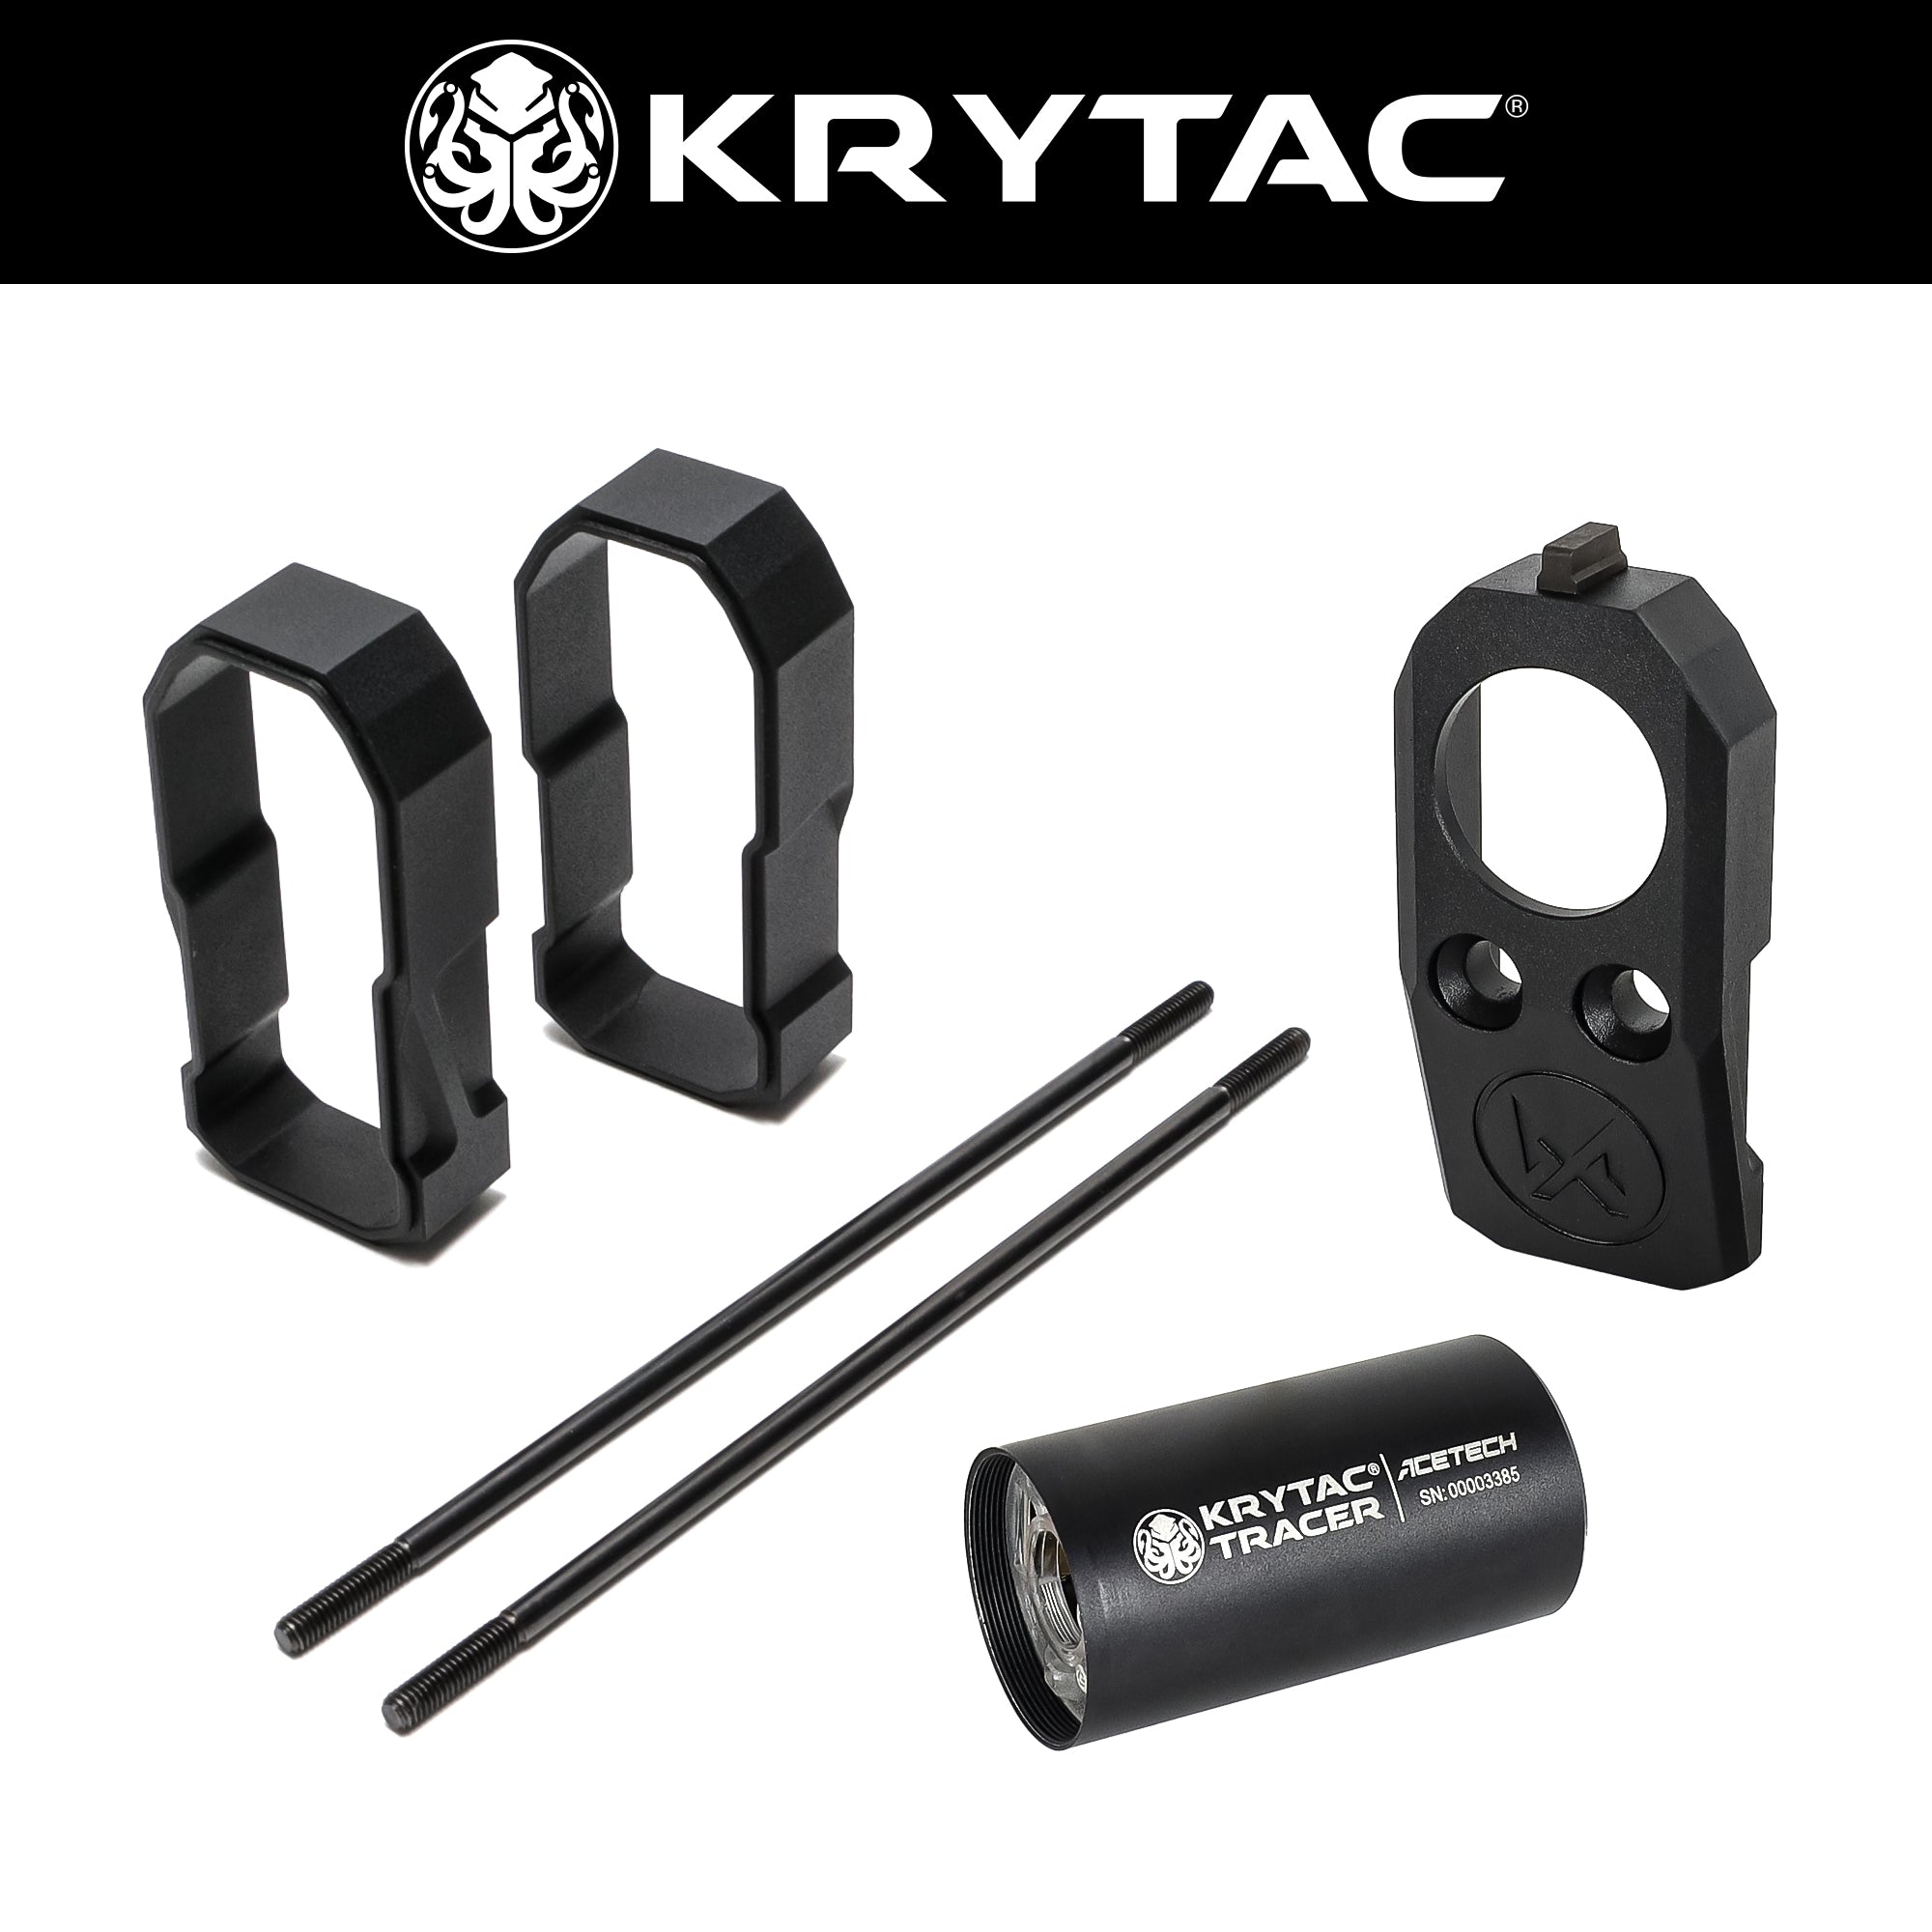 【5月中旬発売予定/予約受付中】KRYTAC SilencerCo Maxim 9 拡張キット&トレーサーユニット